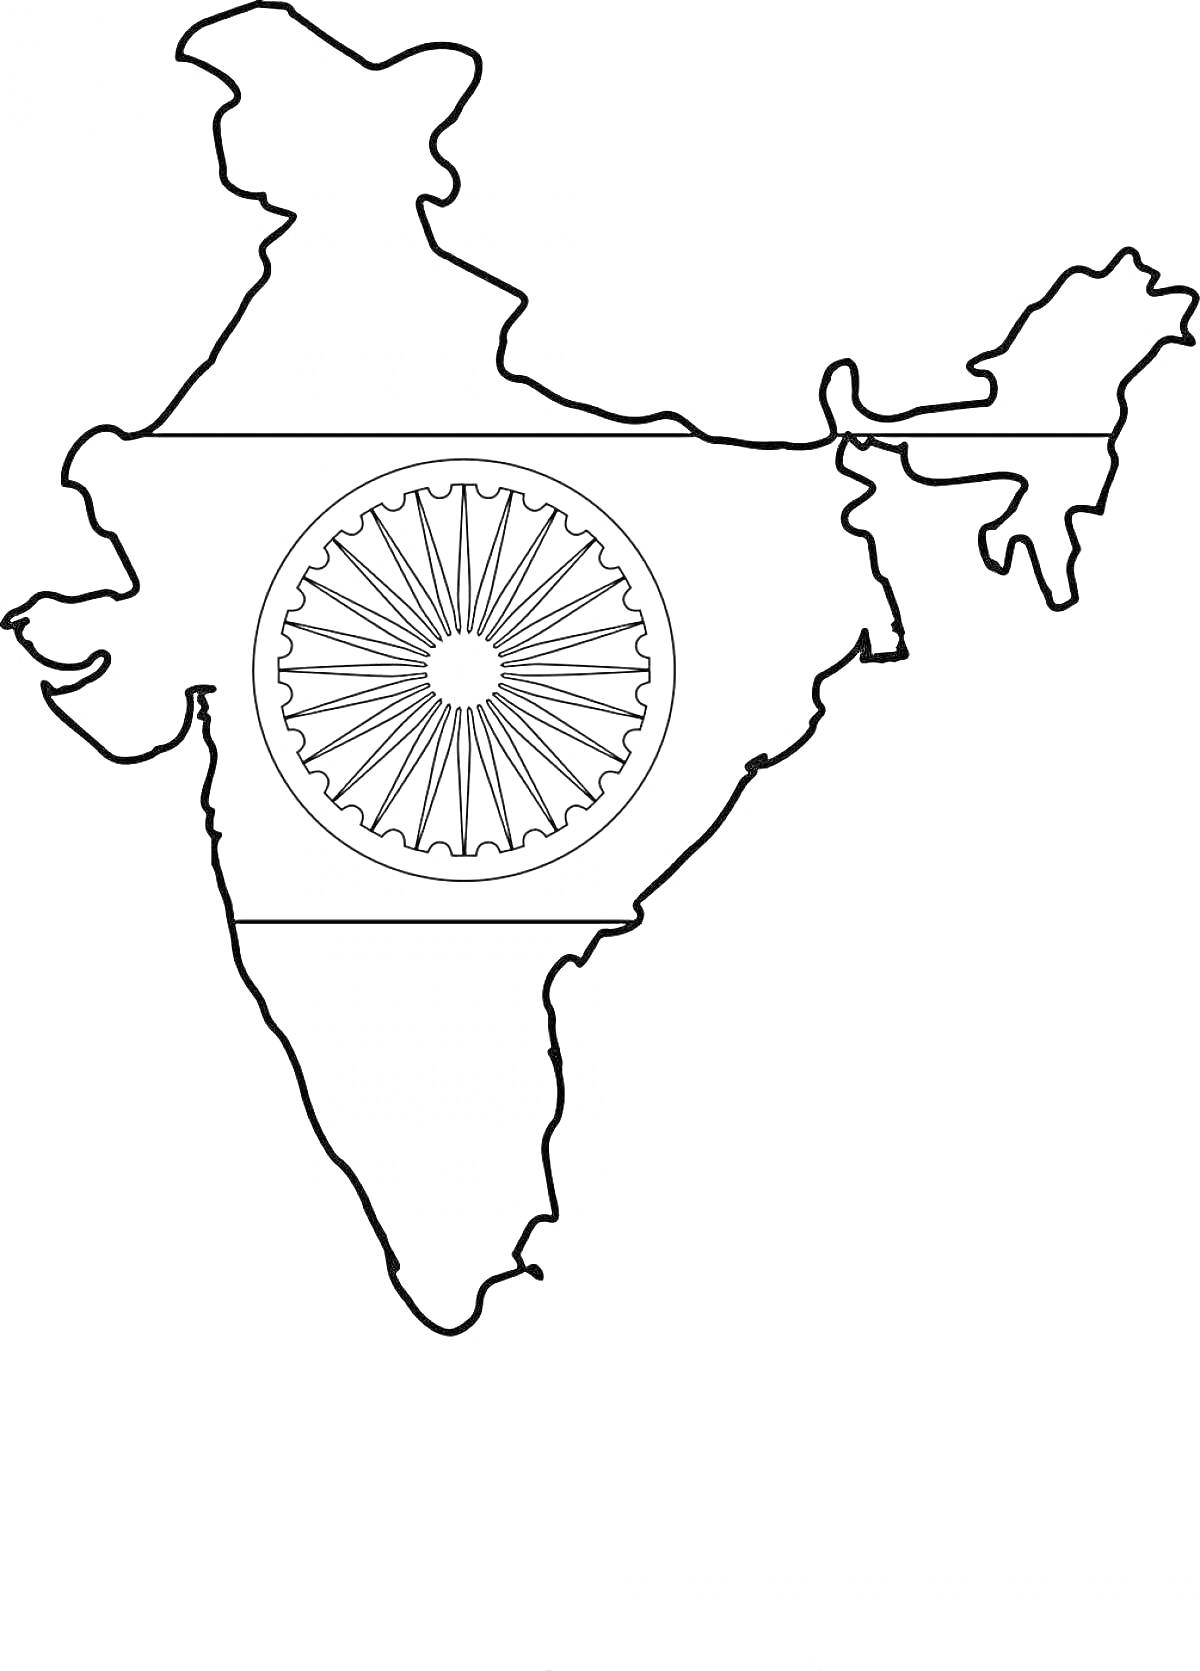 Контур карты Индии со стилизованным изображением флага Индии с колесом Ашока